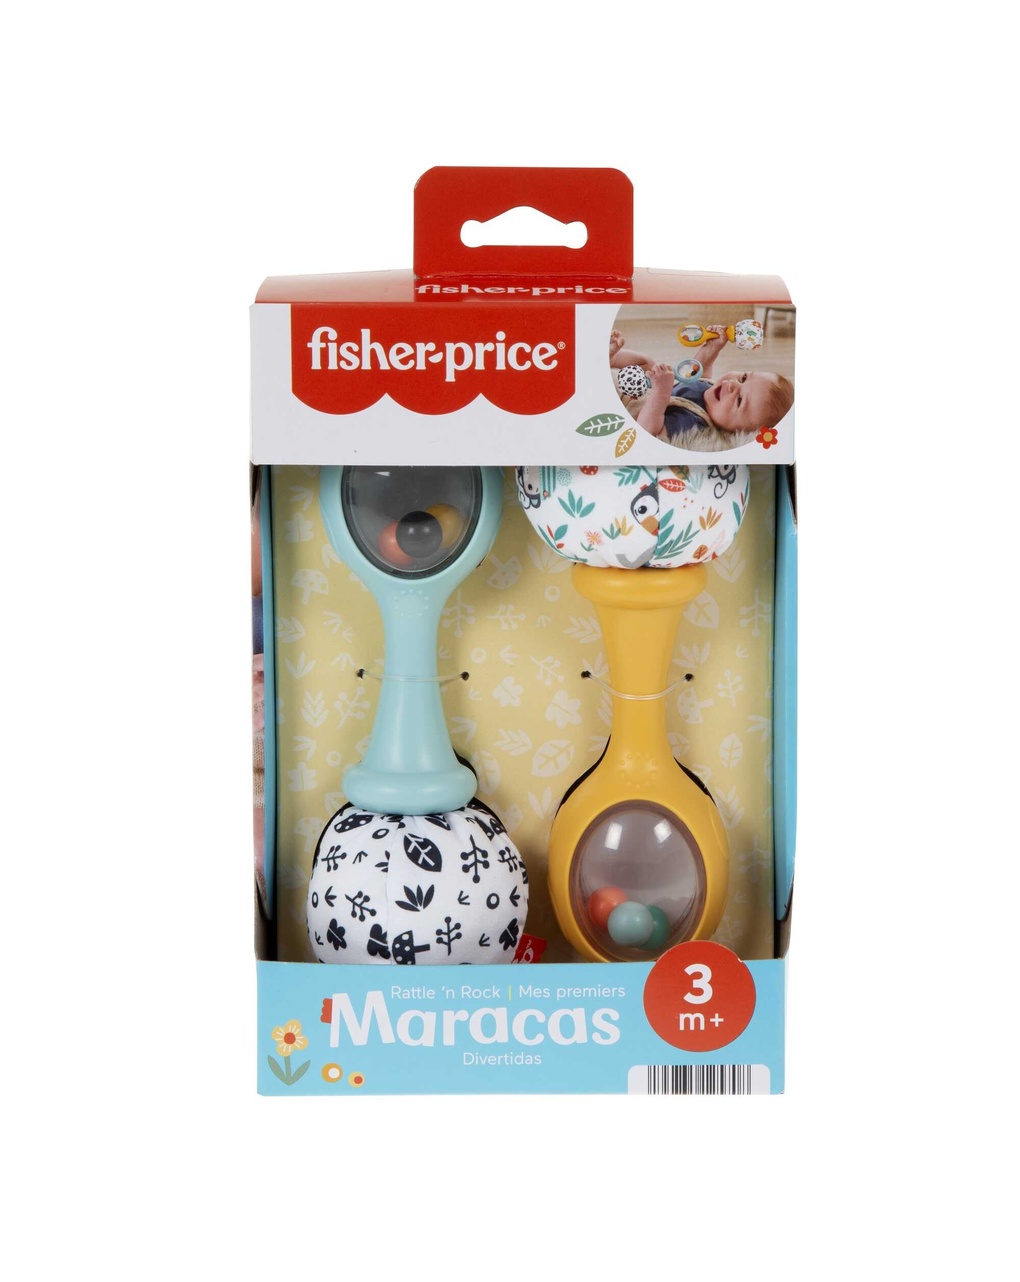 Maracas sonaglino scuoti e gioca - 3m+ - fisher price - Fisher-Price